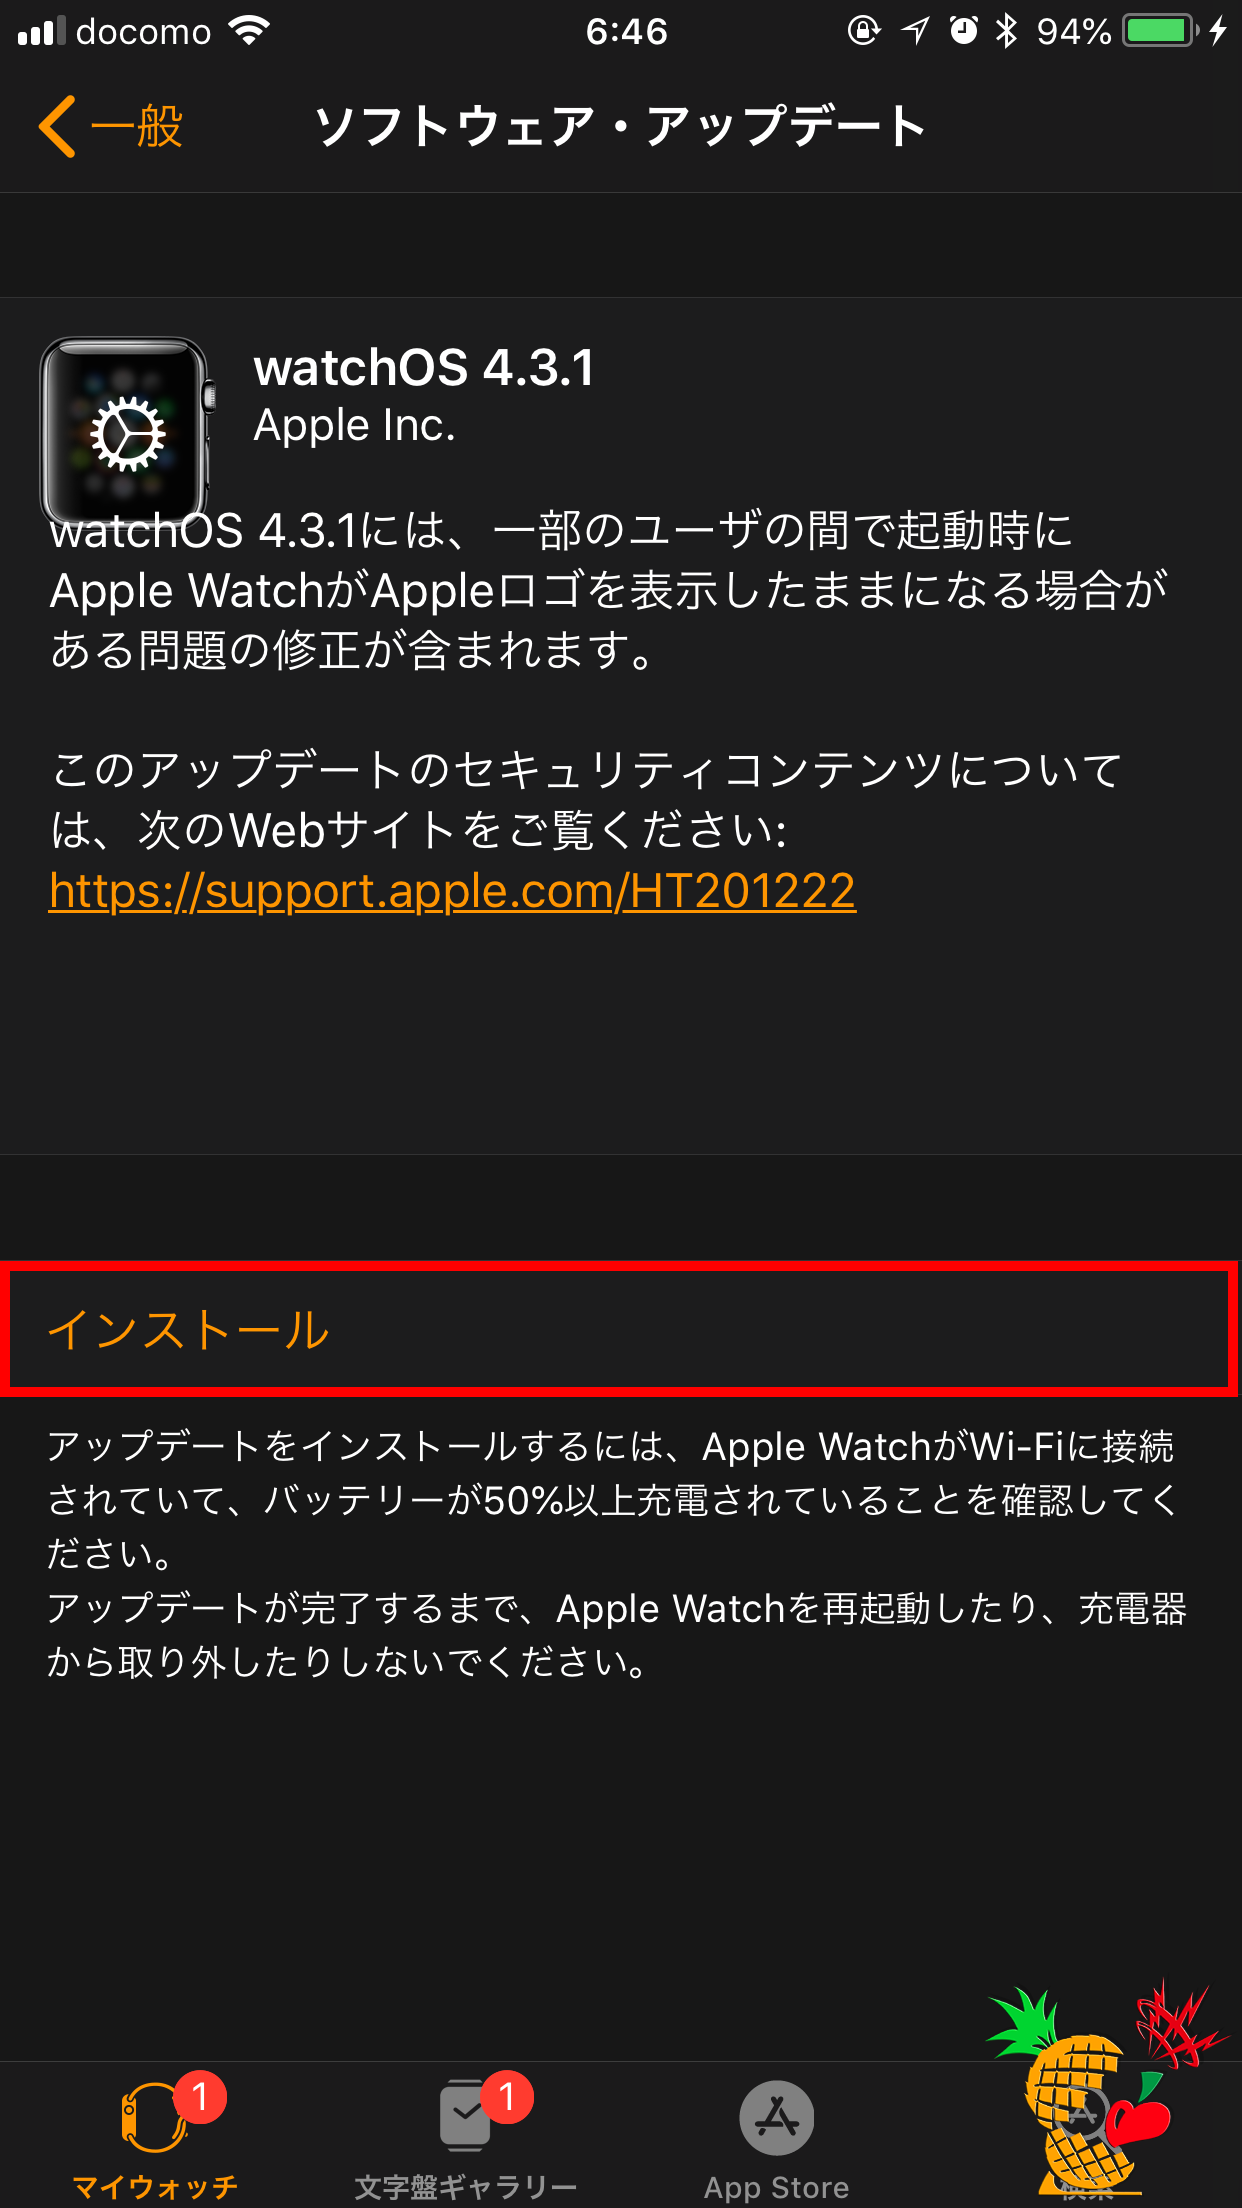 watchOS 4.3.1